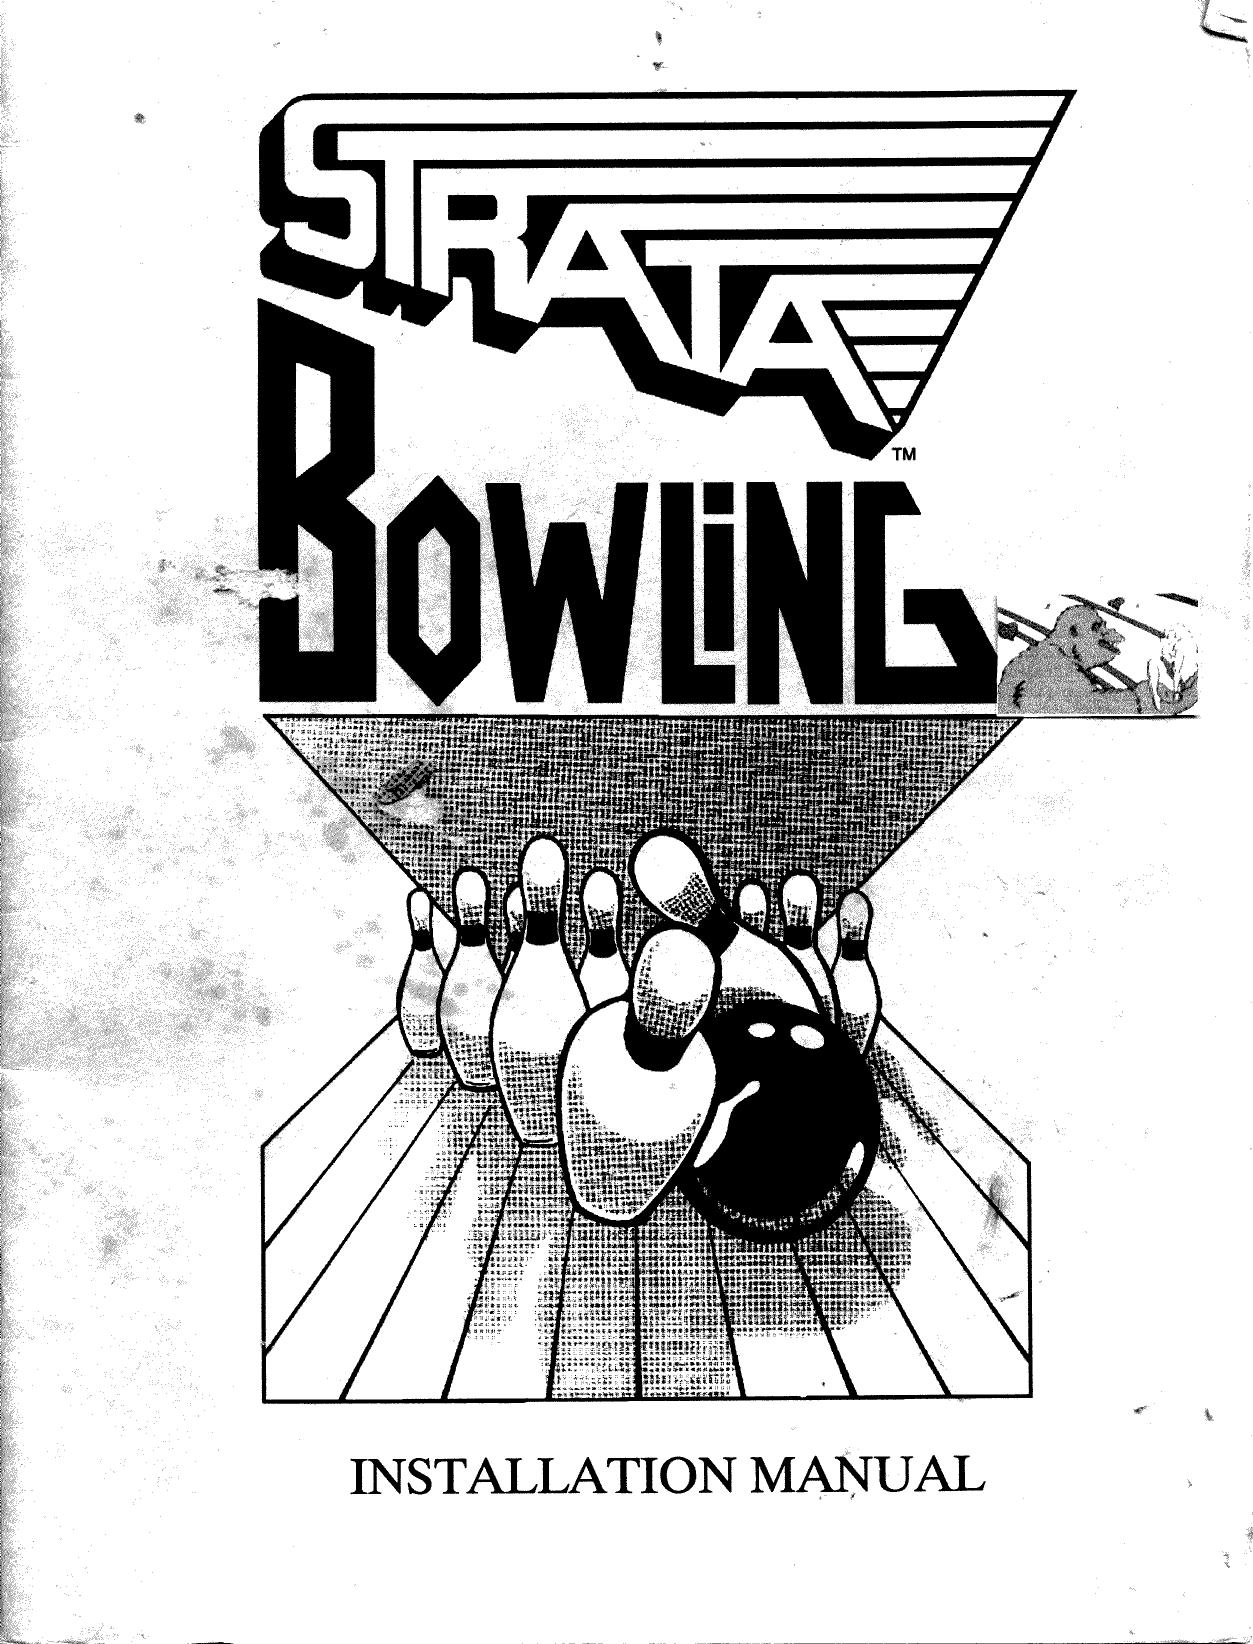 Strata Bowling.man